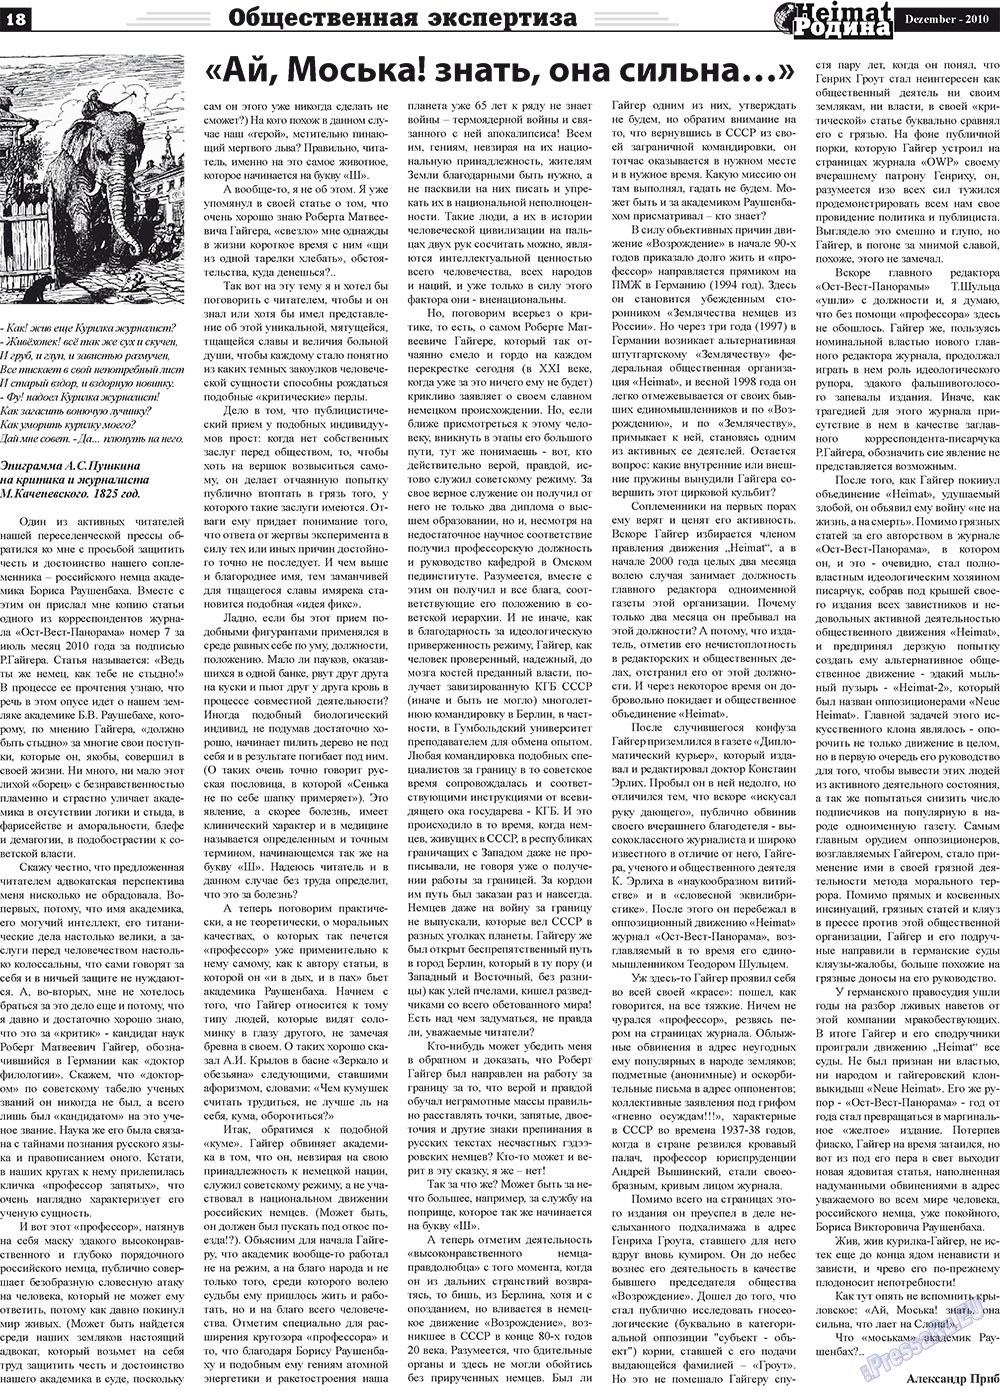 Heimat-Родина (газета). 2010 год, номер 12, стр. 18